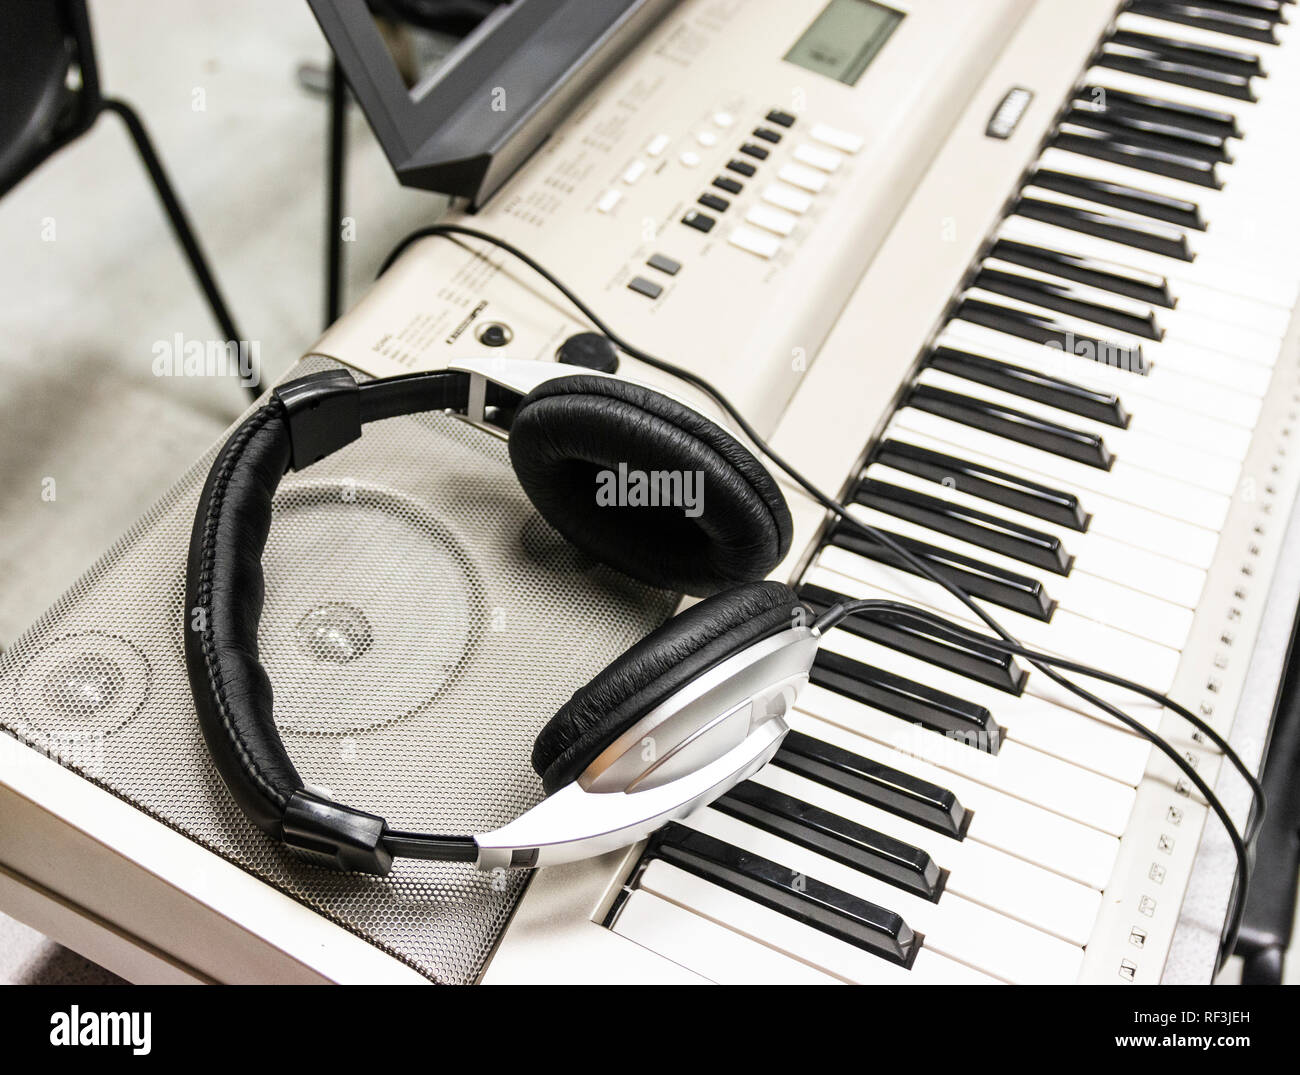 Kopfhörer ruhen auf die Lautsprecher ein E-Piano Stockfotografie - Alamy